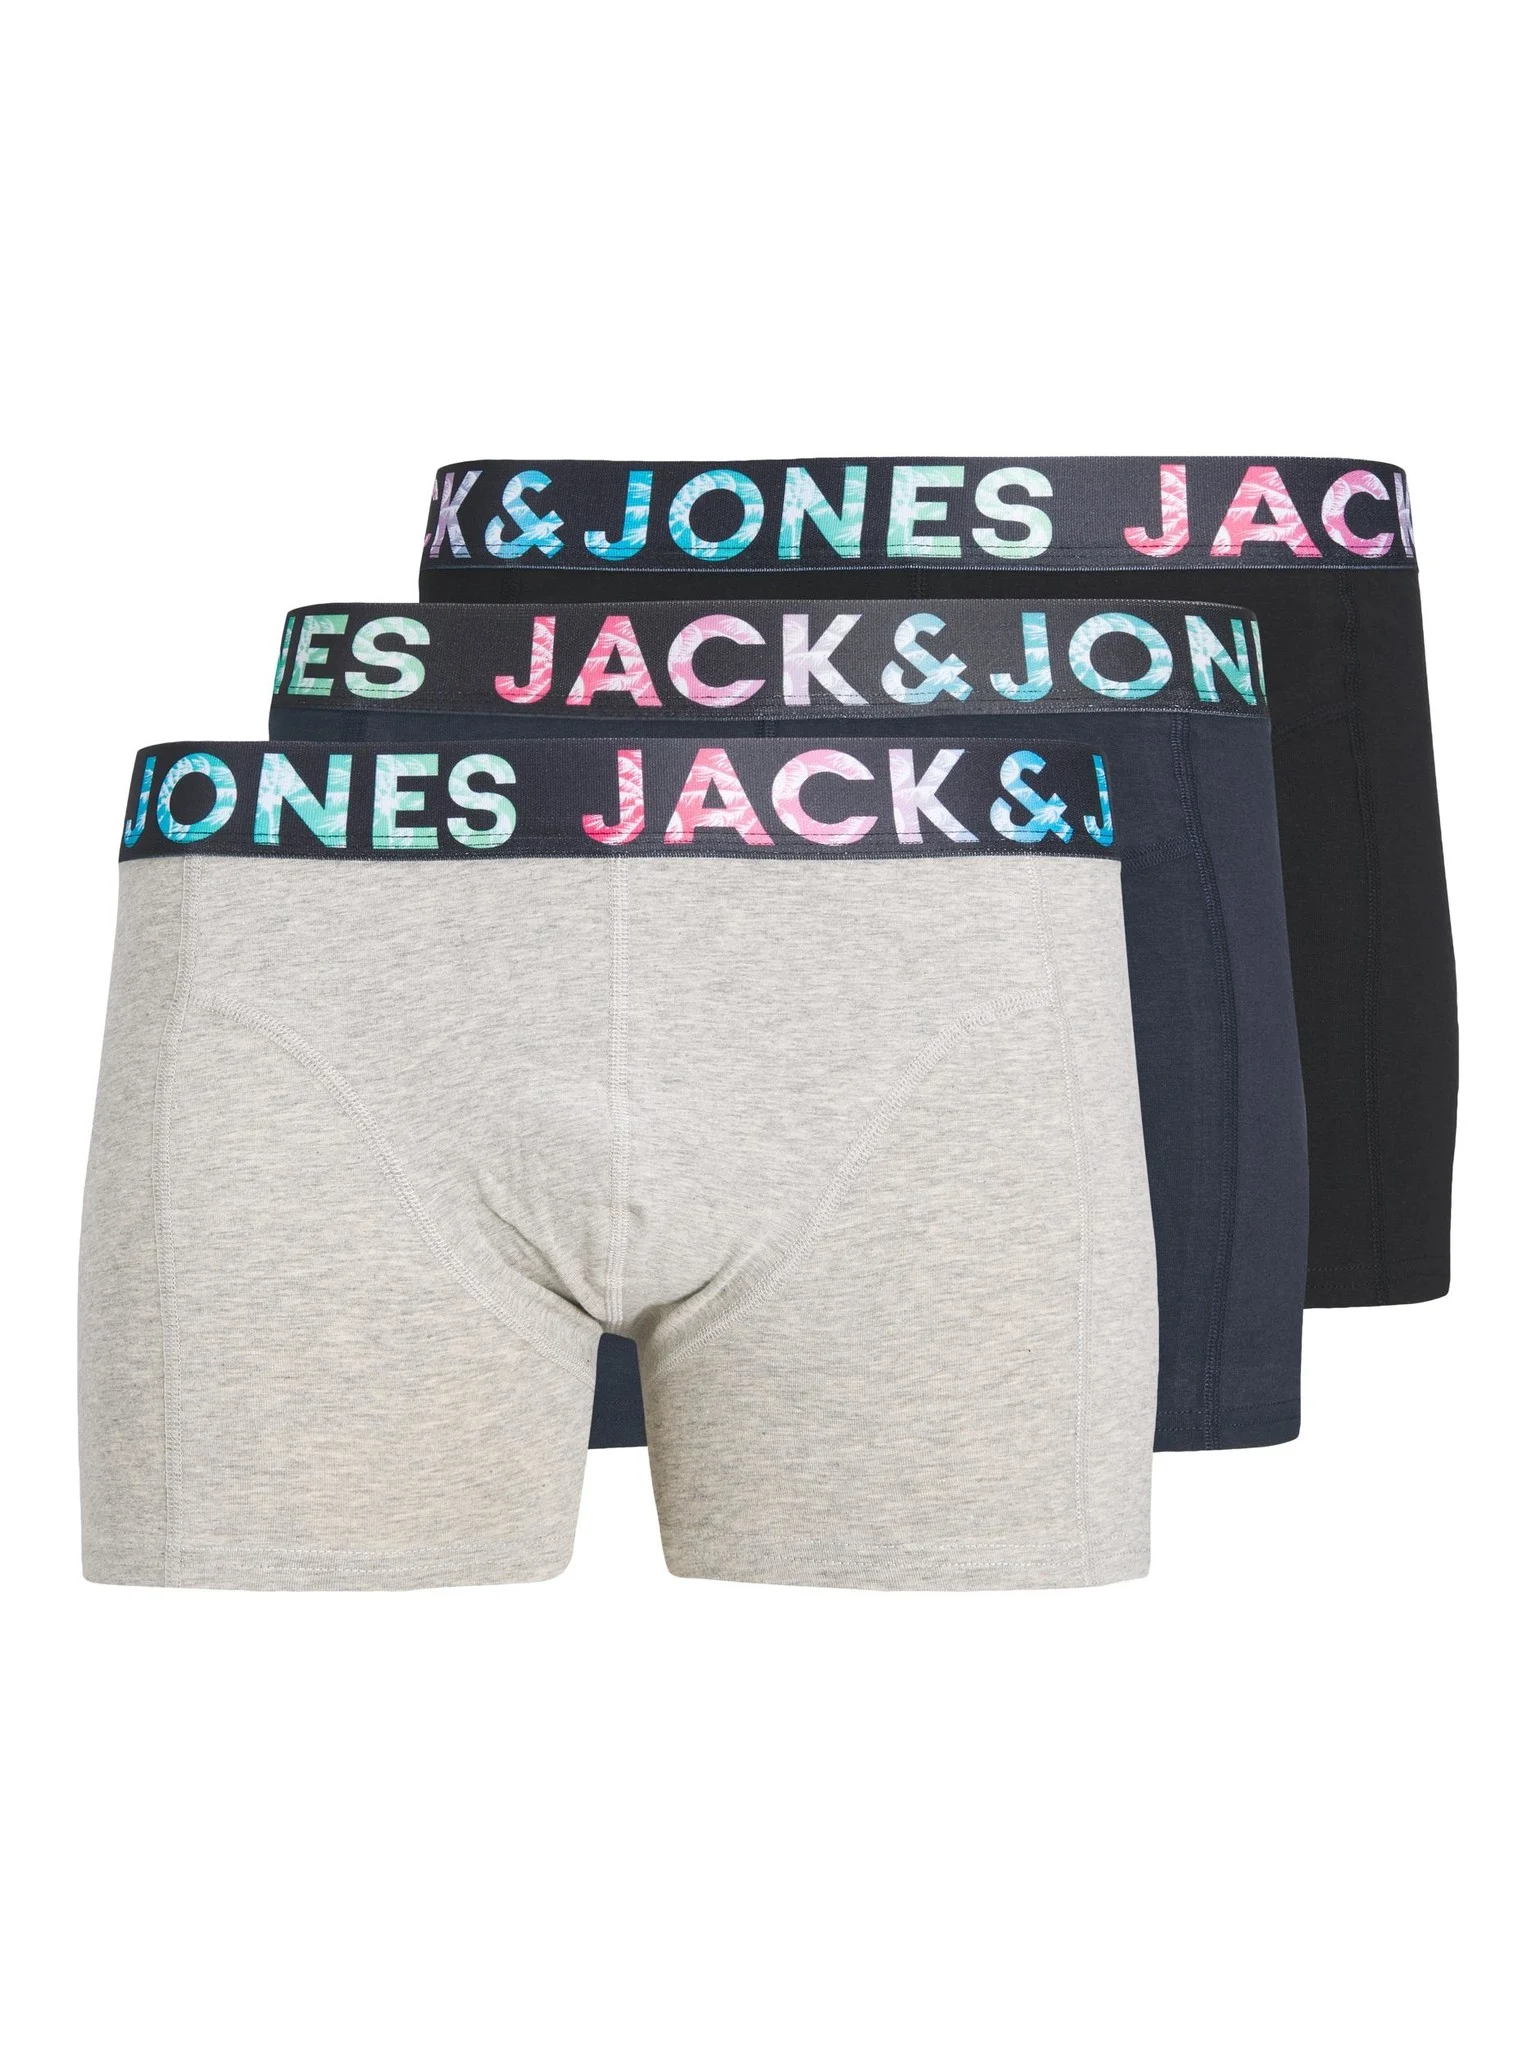 Afbeelding van Jack & Jones Boxershorts jongens jactampa 3-pack